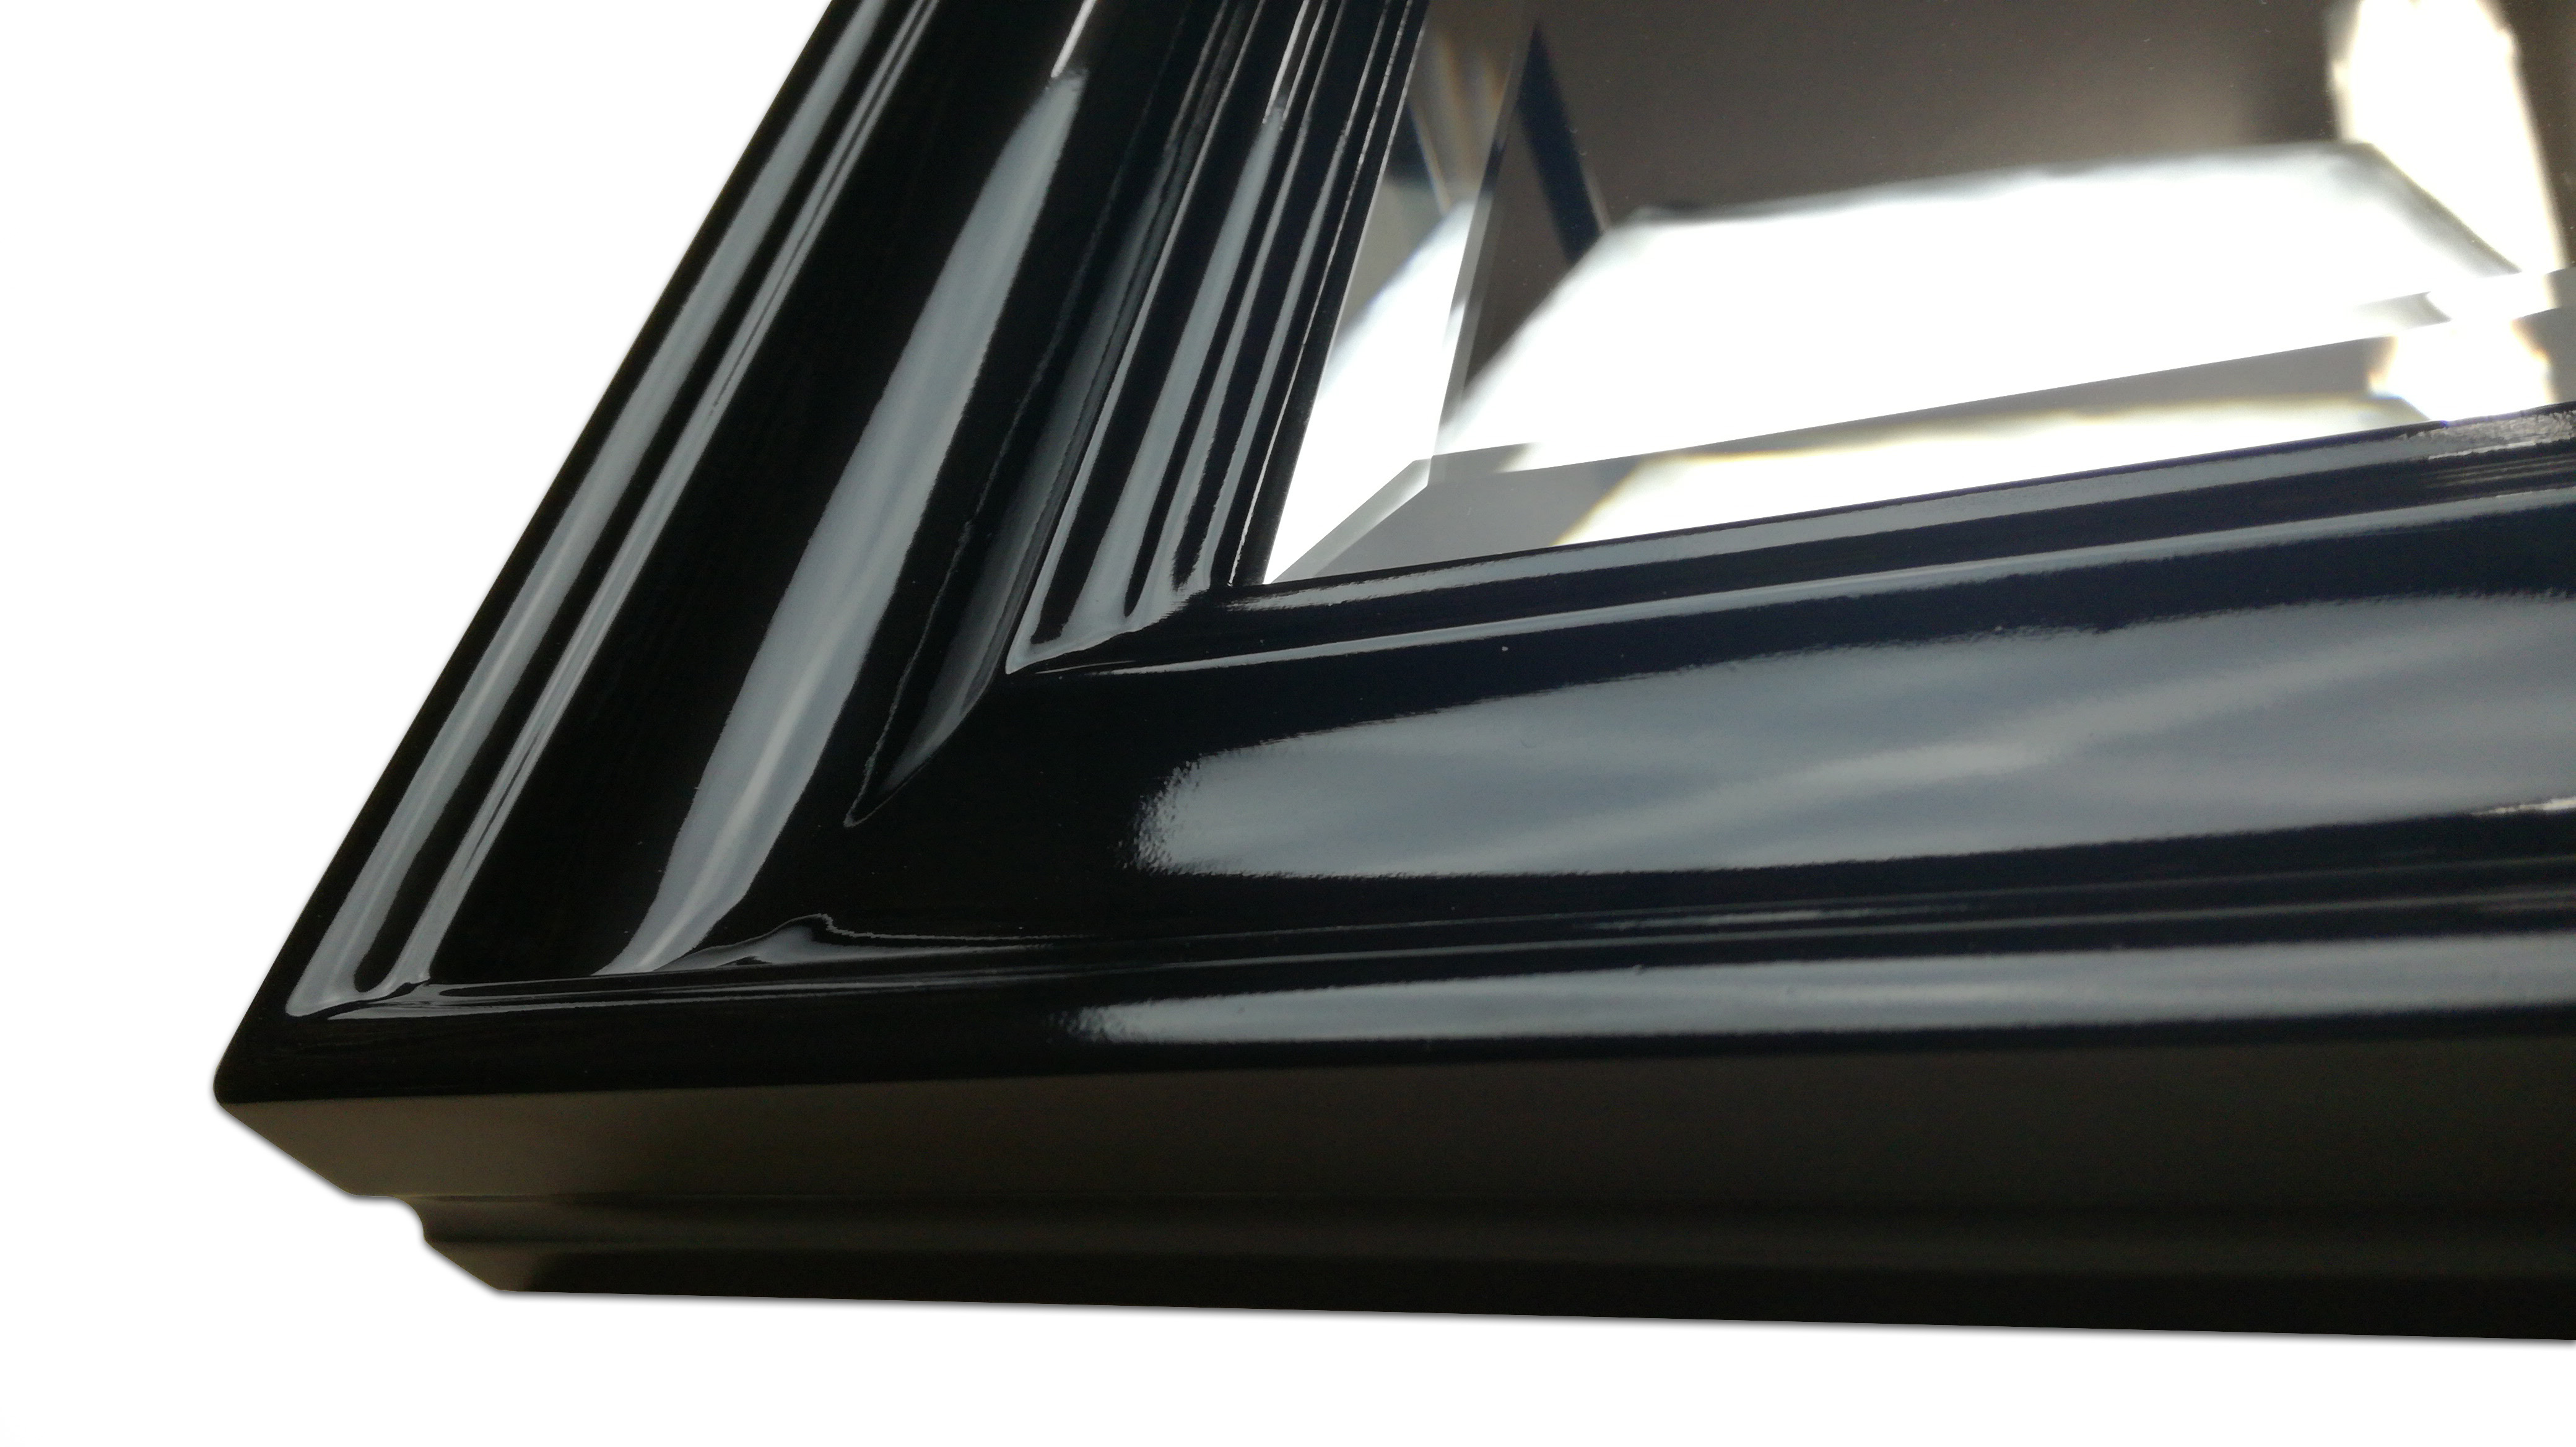 Mirror in a black high gloss frame